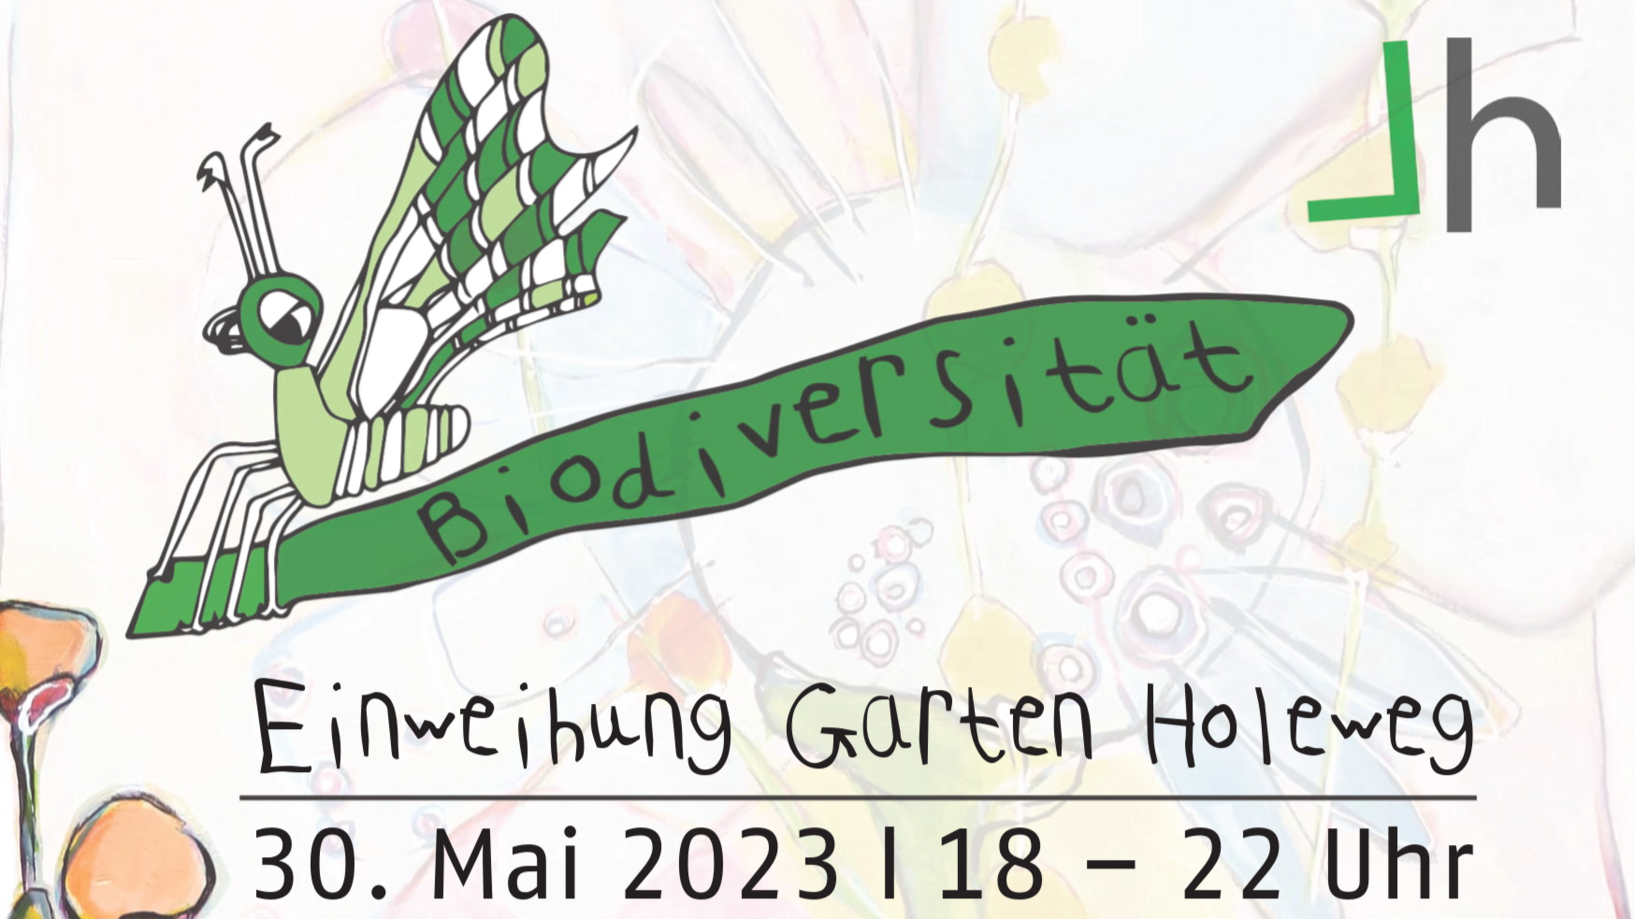 Einweihung Garten Holeweg am 30. Mai 2023 in Reinach